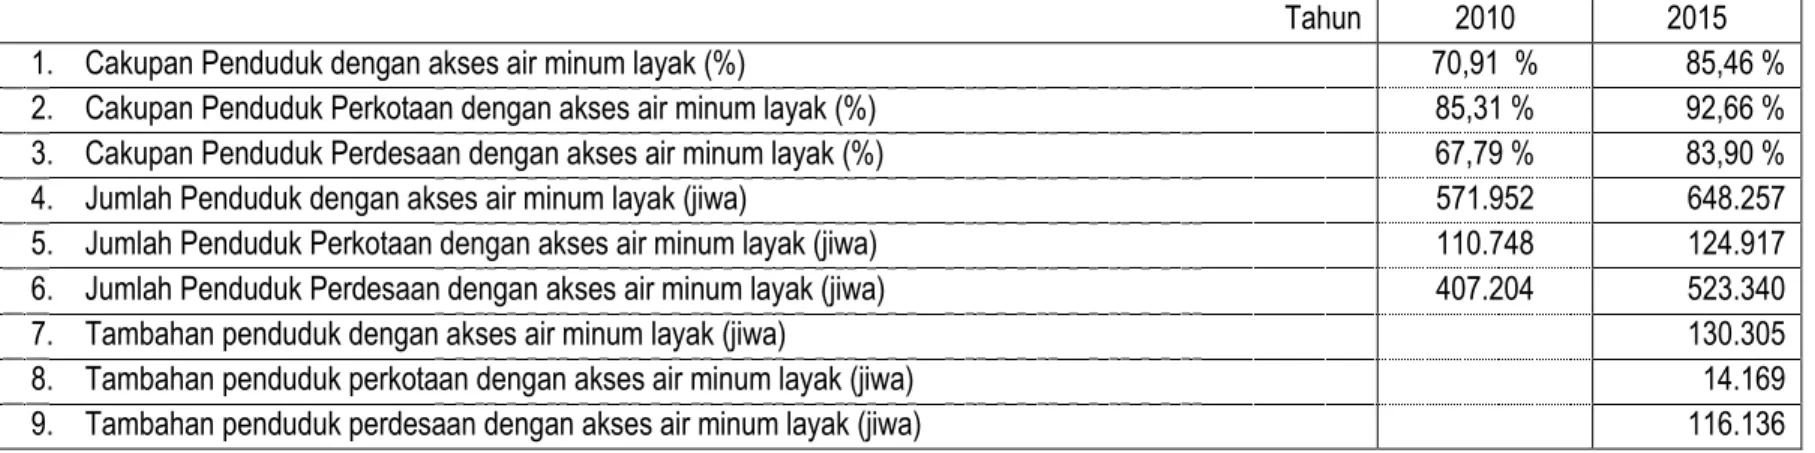 Tabel 16. Proyeksi Kebutuhan Air Minum Kabupaten Temanggung sampai dengan Tahun 2015 